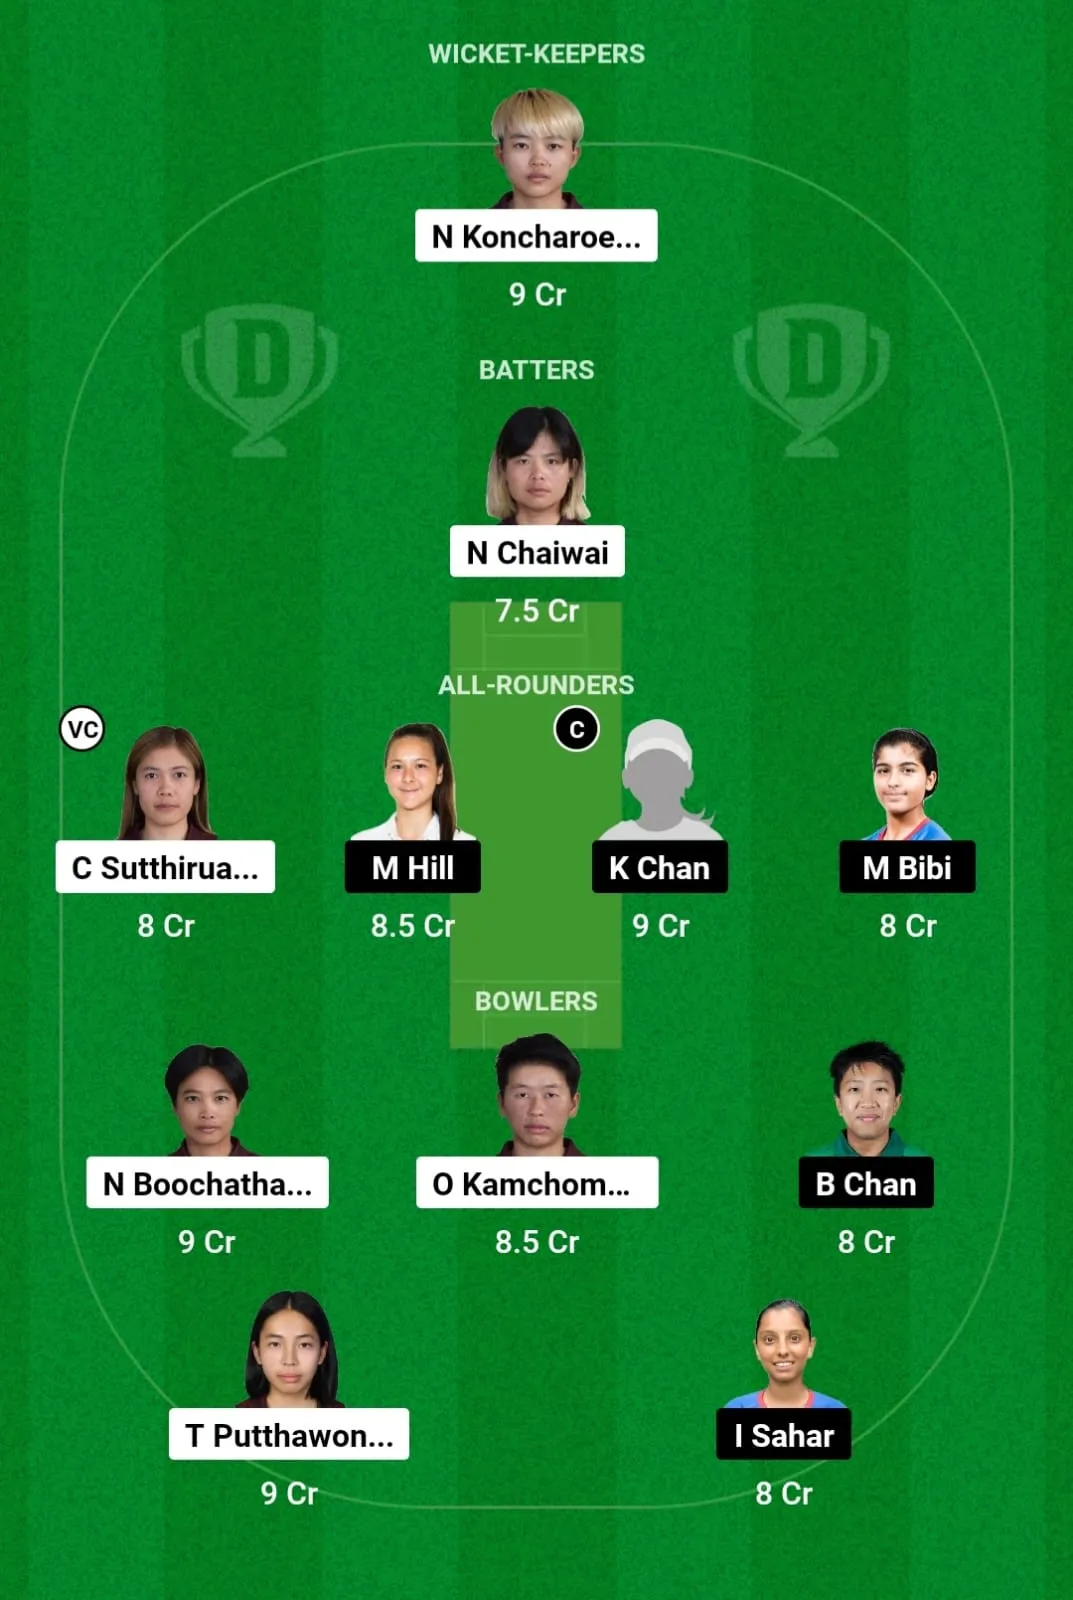 TL-W vs HK-W Dream11 Prediction